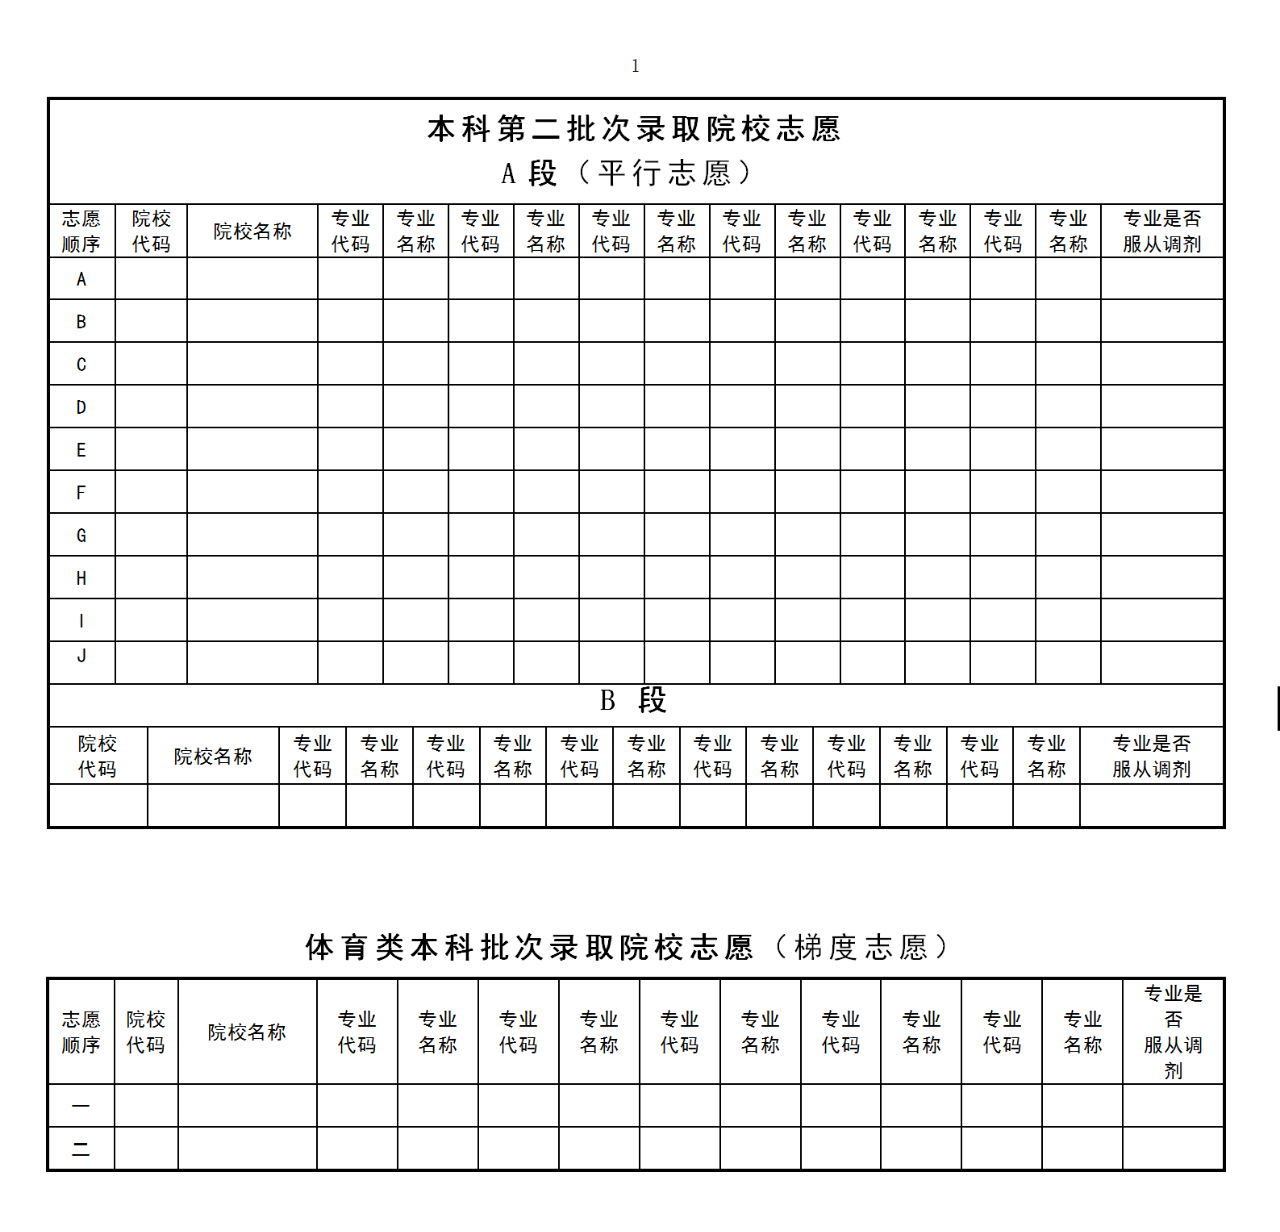 2020黑龙江高考公布成绩及填报志愿时间确定！附填报须知及志愿表